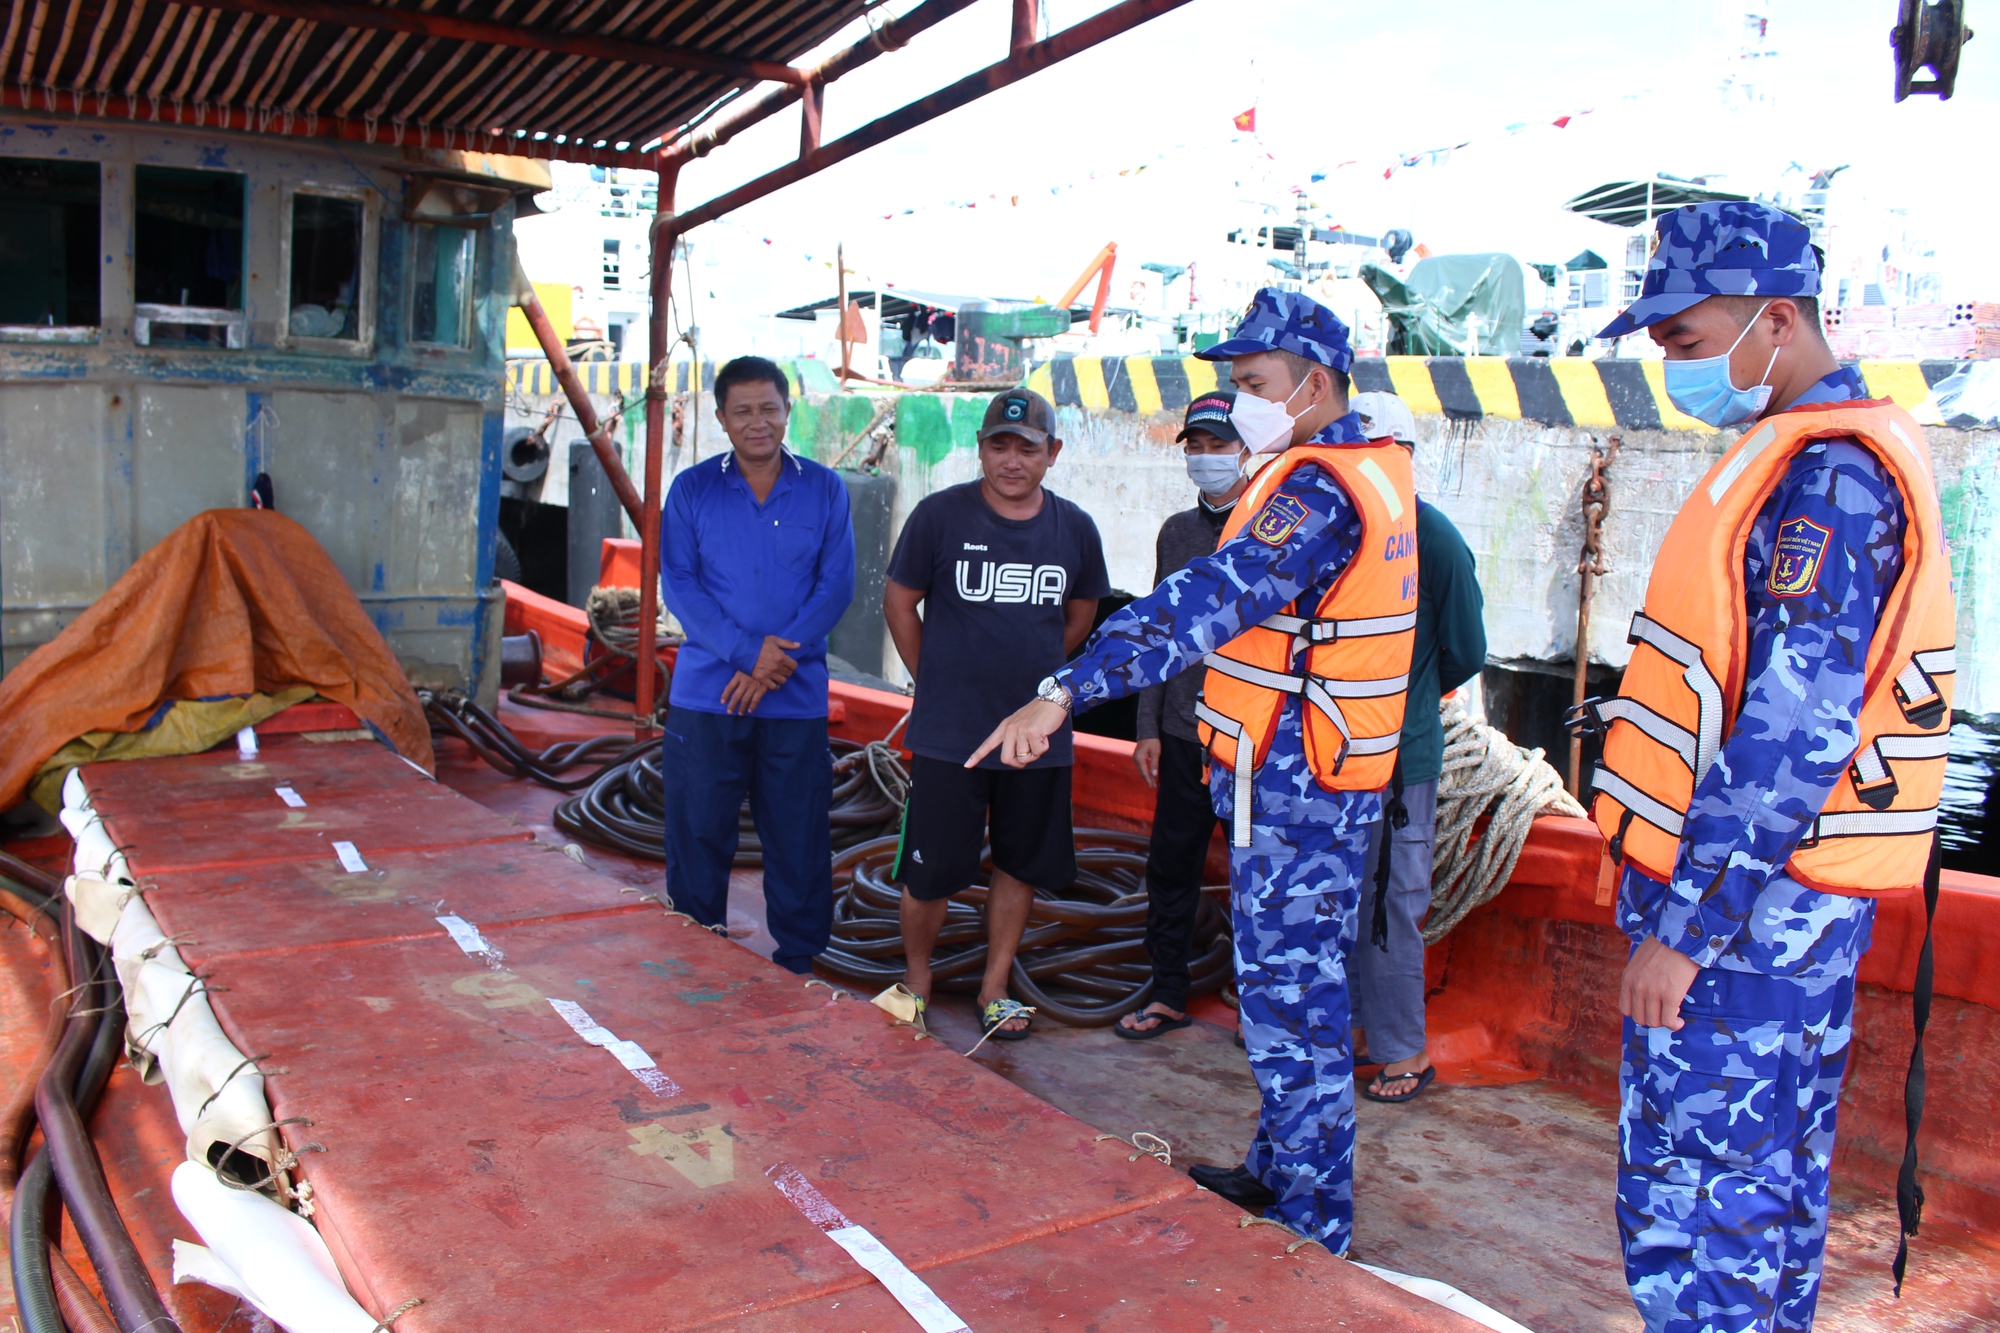 Cảnh sát biển bắt giữ 2 tàu chở 75.000 lít dầu không giấy tờ hợp pháp - Ảnh 5.